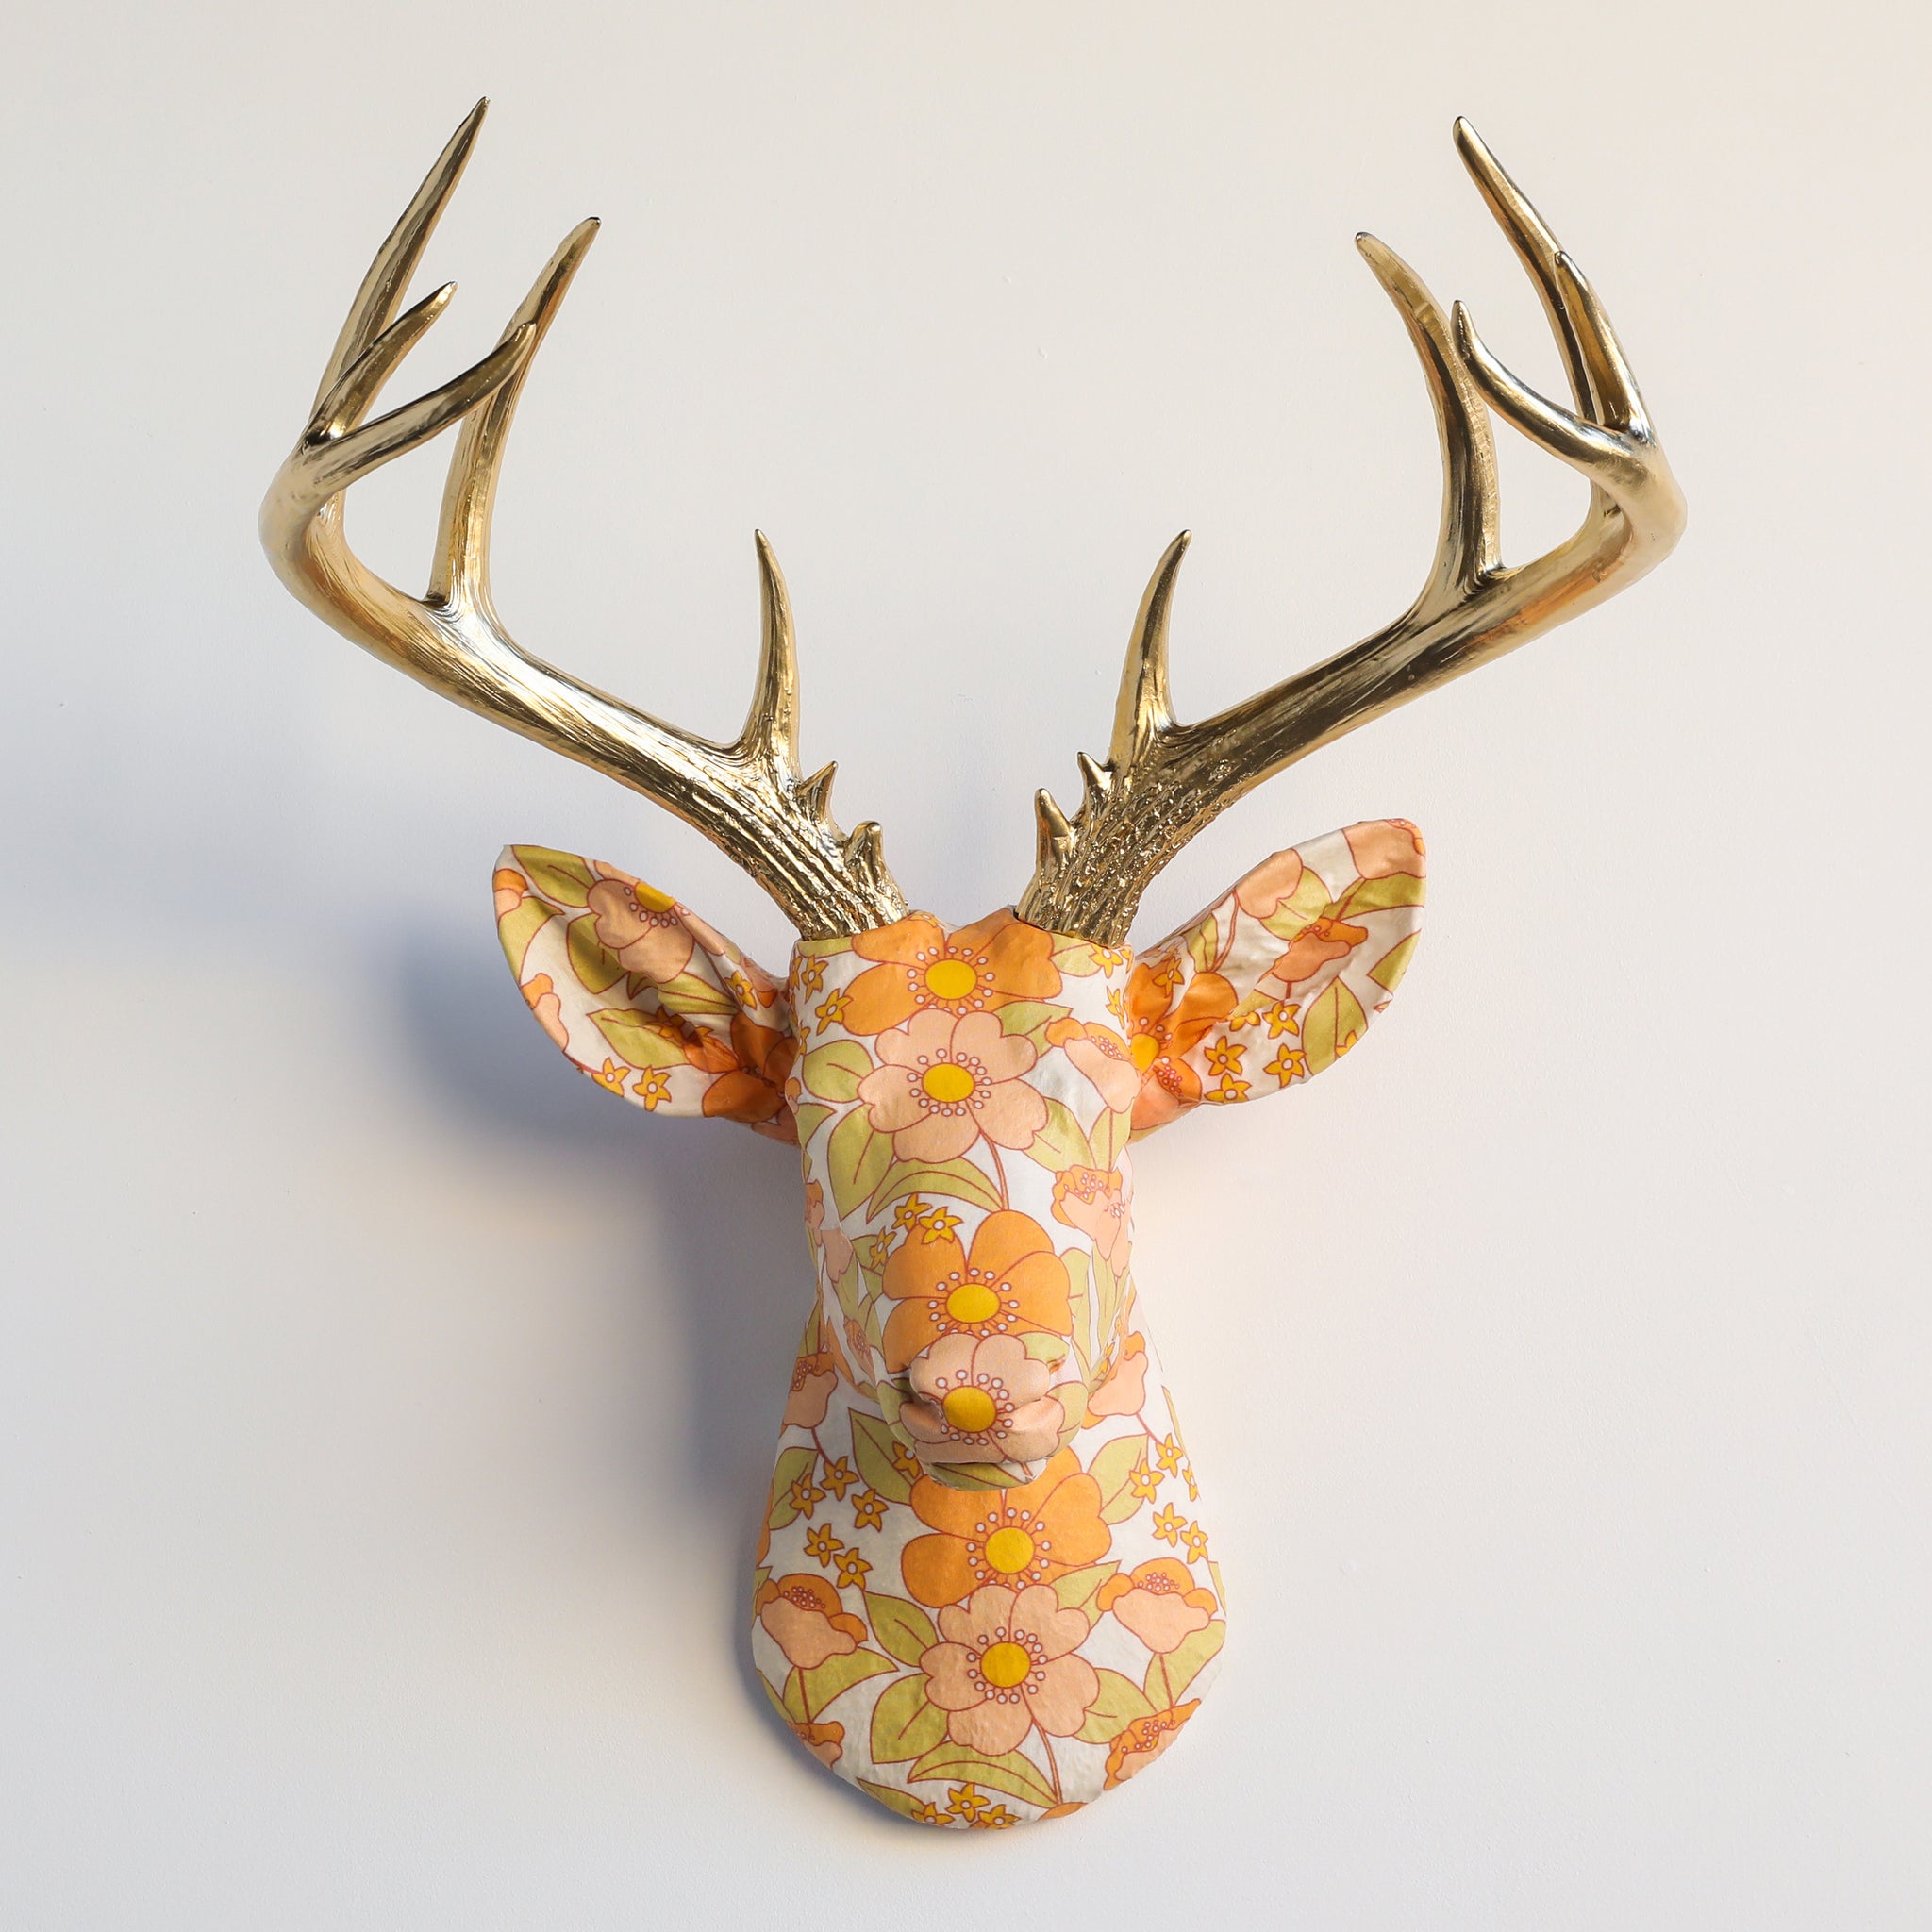 Fabric Deer Head - Retro Floral Pattern Fabric Deer Head